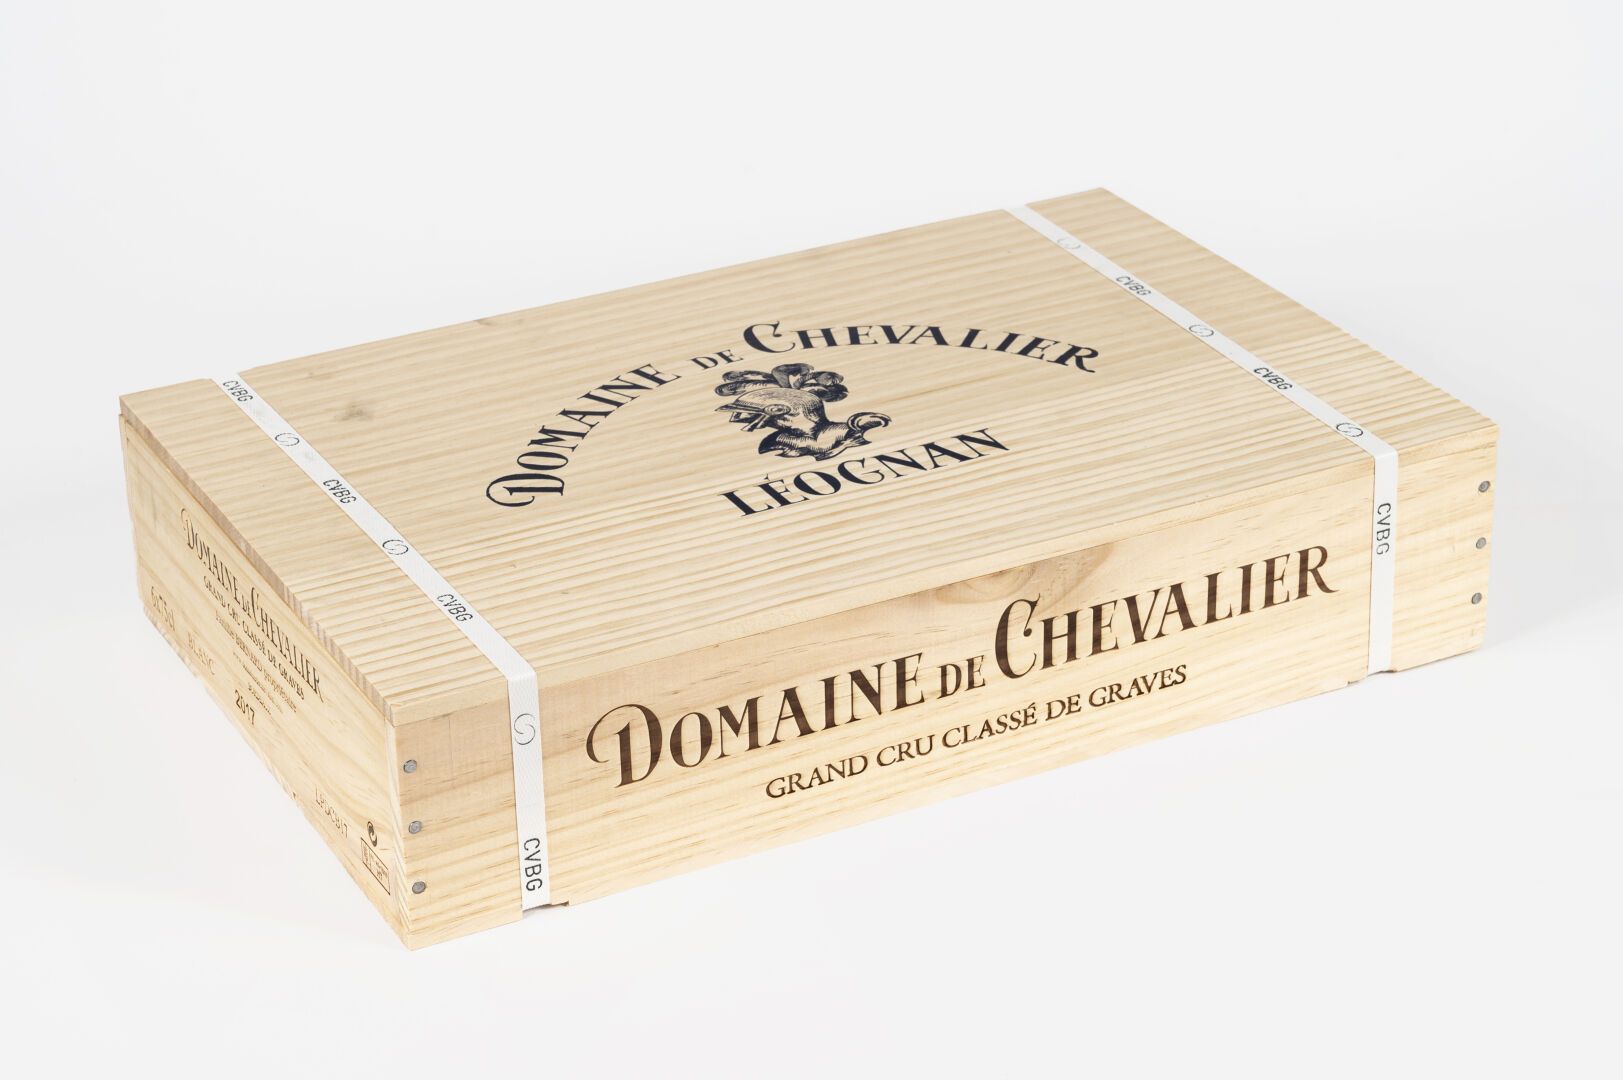 6 bouteilles Domaine de Chevalier Blanc 2017 6 瓶Domaine de Chevalier Blanc 2017
&hellip;